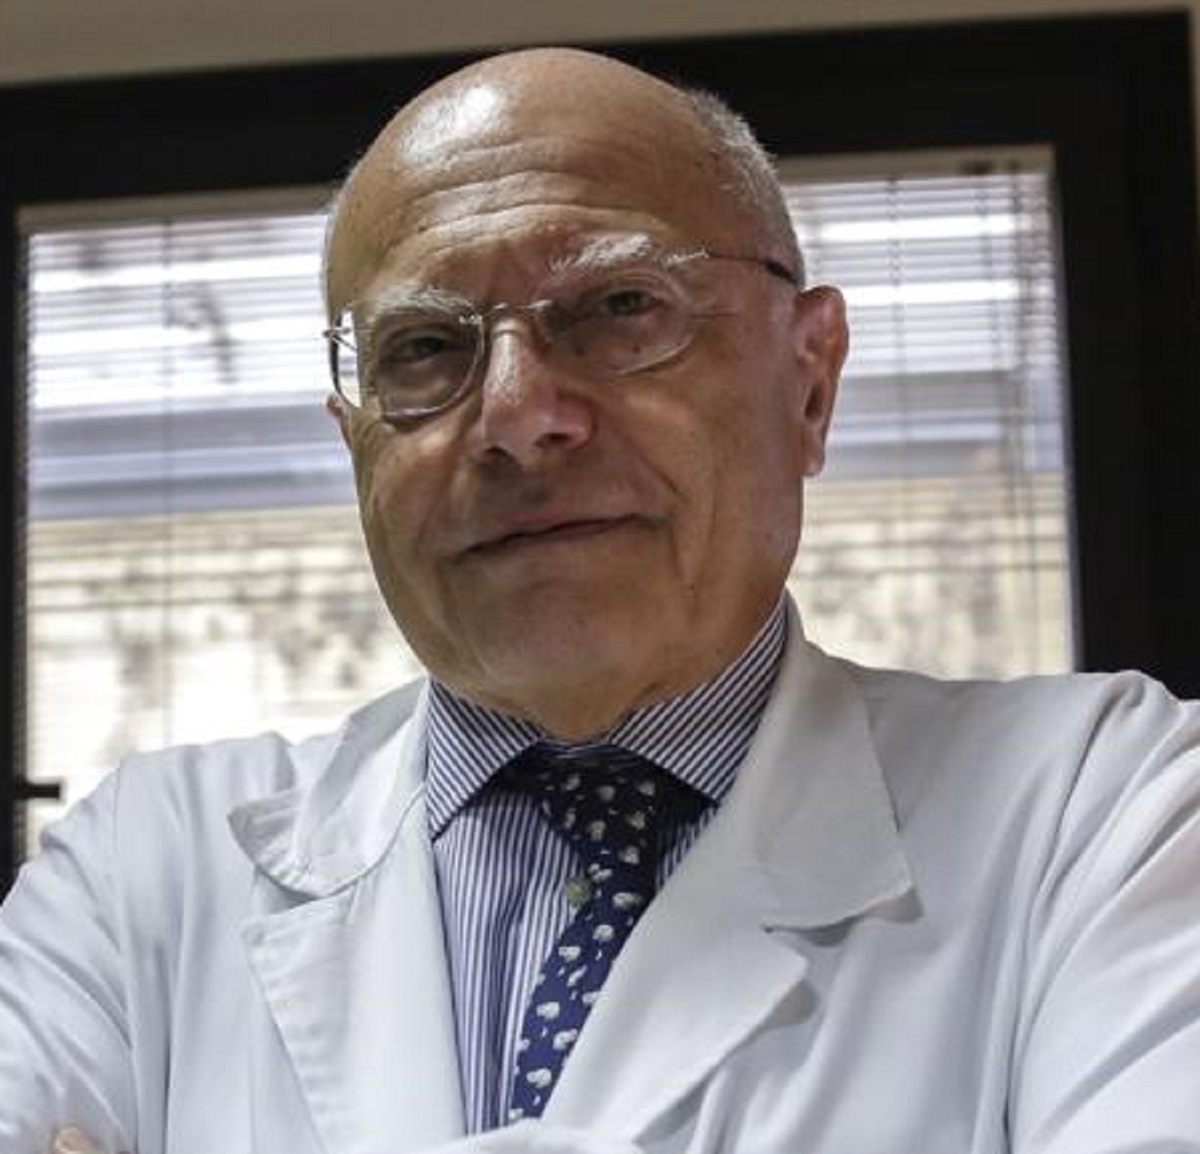 Covid Massimo Galli obbligo vaccino favorevole